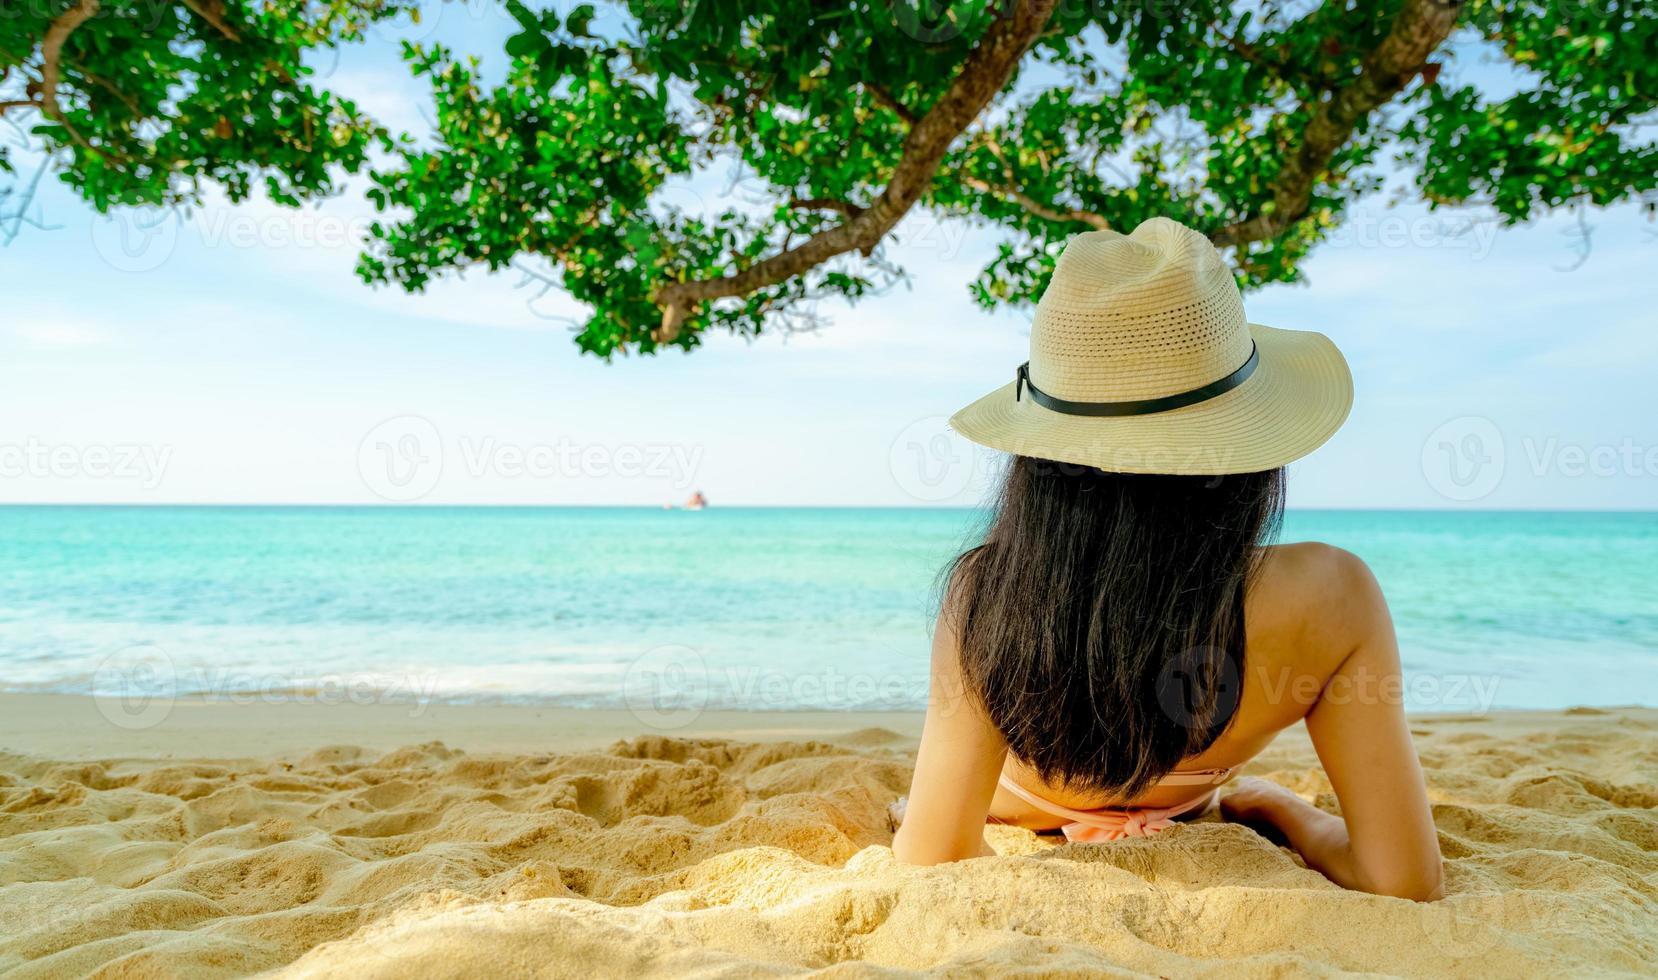 vue arrière d'une jeune femme asiatique heureuse en maillot de bain rose et chapeau de paille se détendre et profiter des vacances à la plage de sable tropicale sous l'arbre. fille à la mode des vacances d'été. modèle sexy de beauté. ambiance estivale. photo